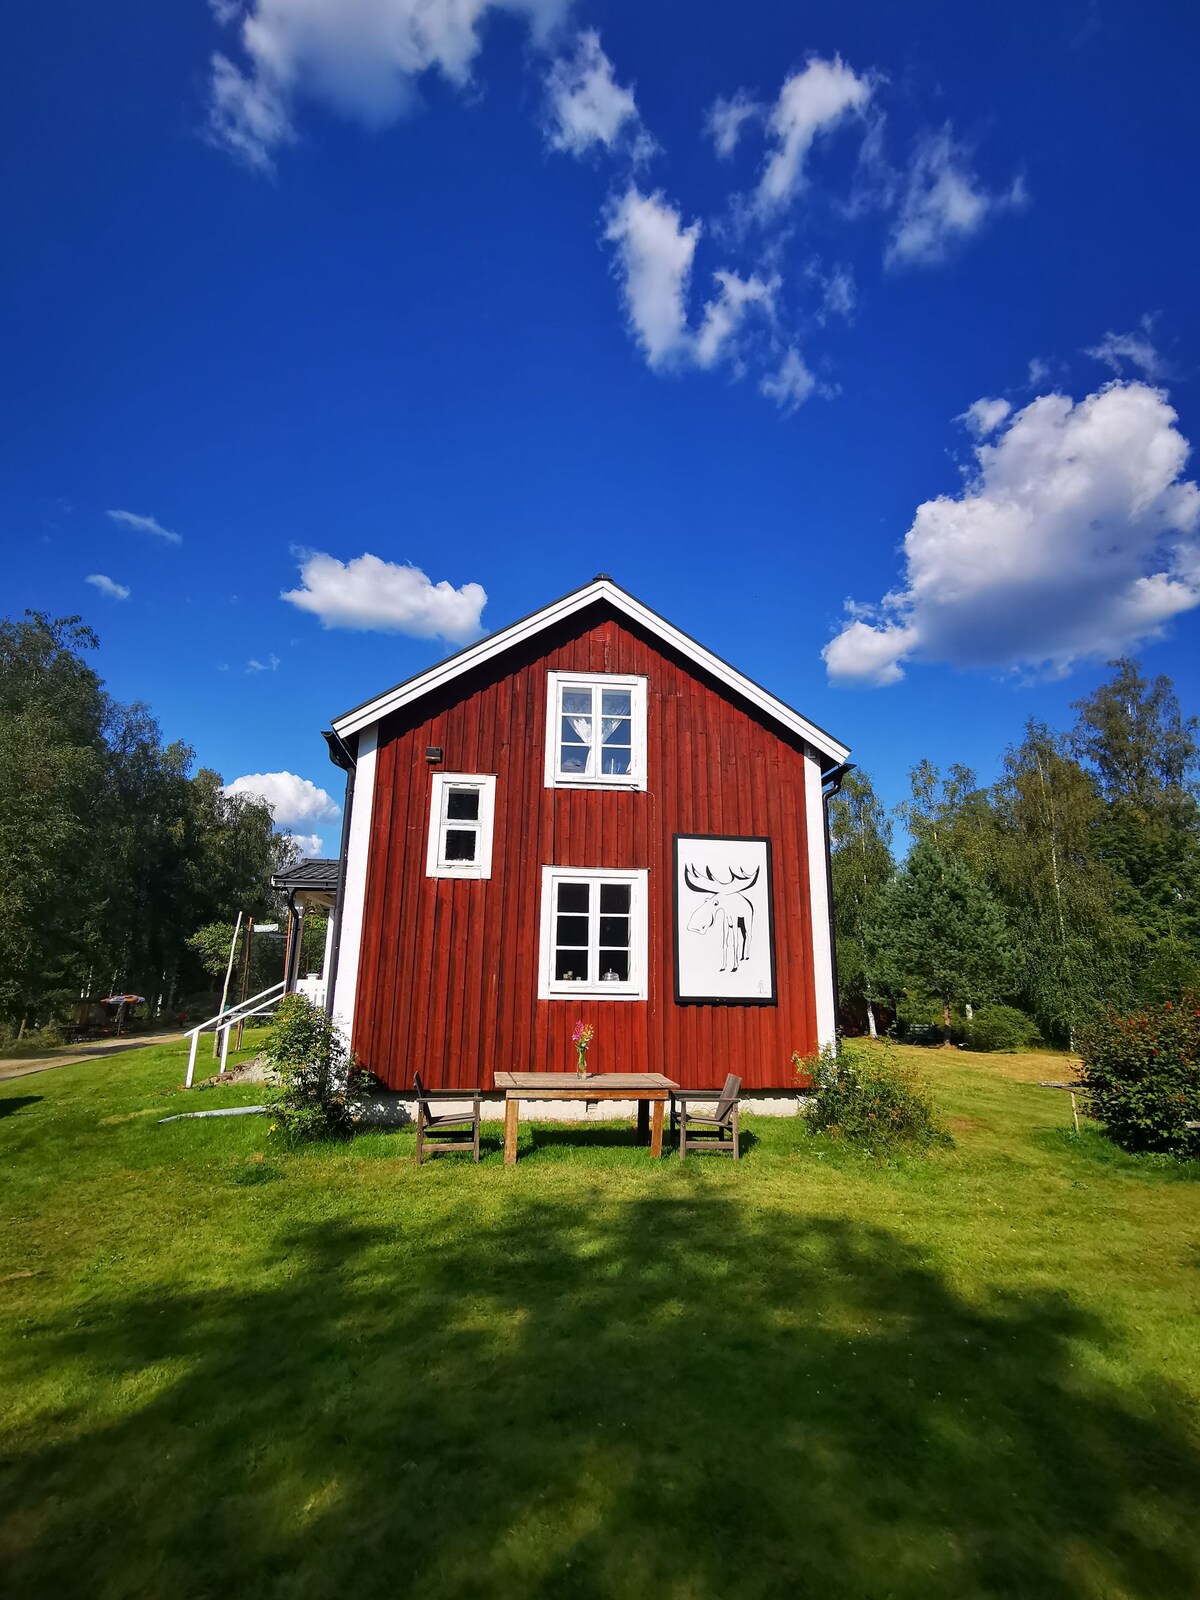 Ferienhaus Silkesdamm in Mittelschweden für 9 Personen mit Sauna bietet viel Raum zur Erholung und Ruhe genießen.